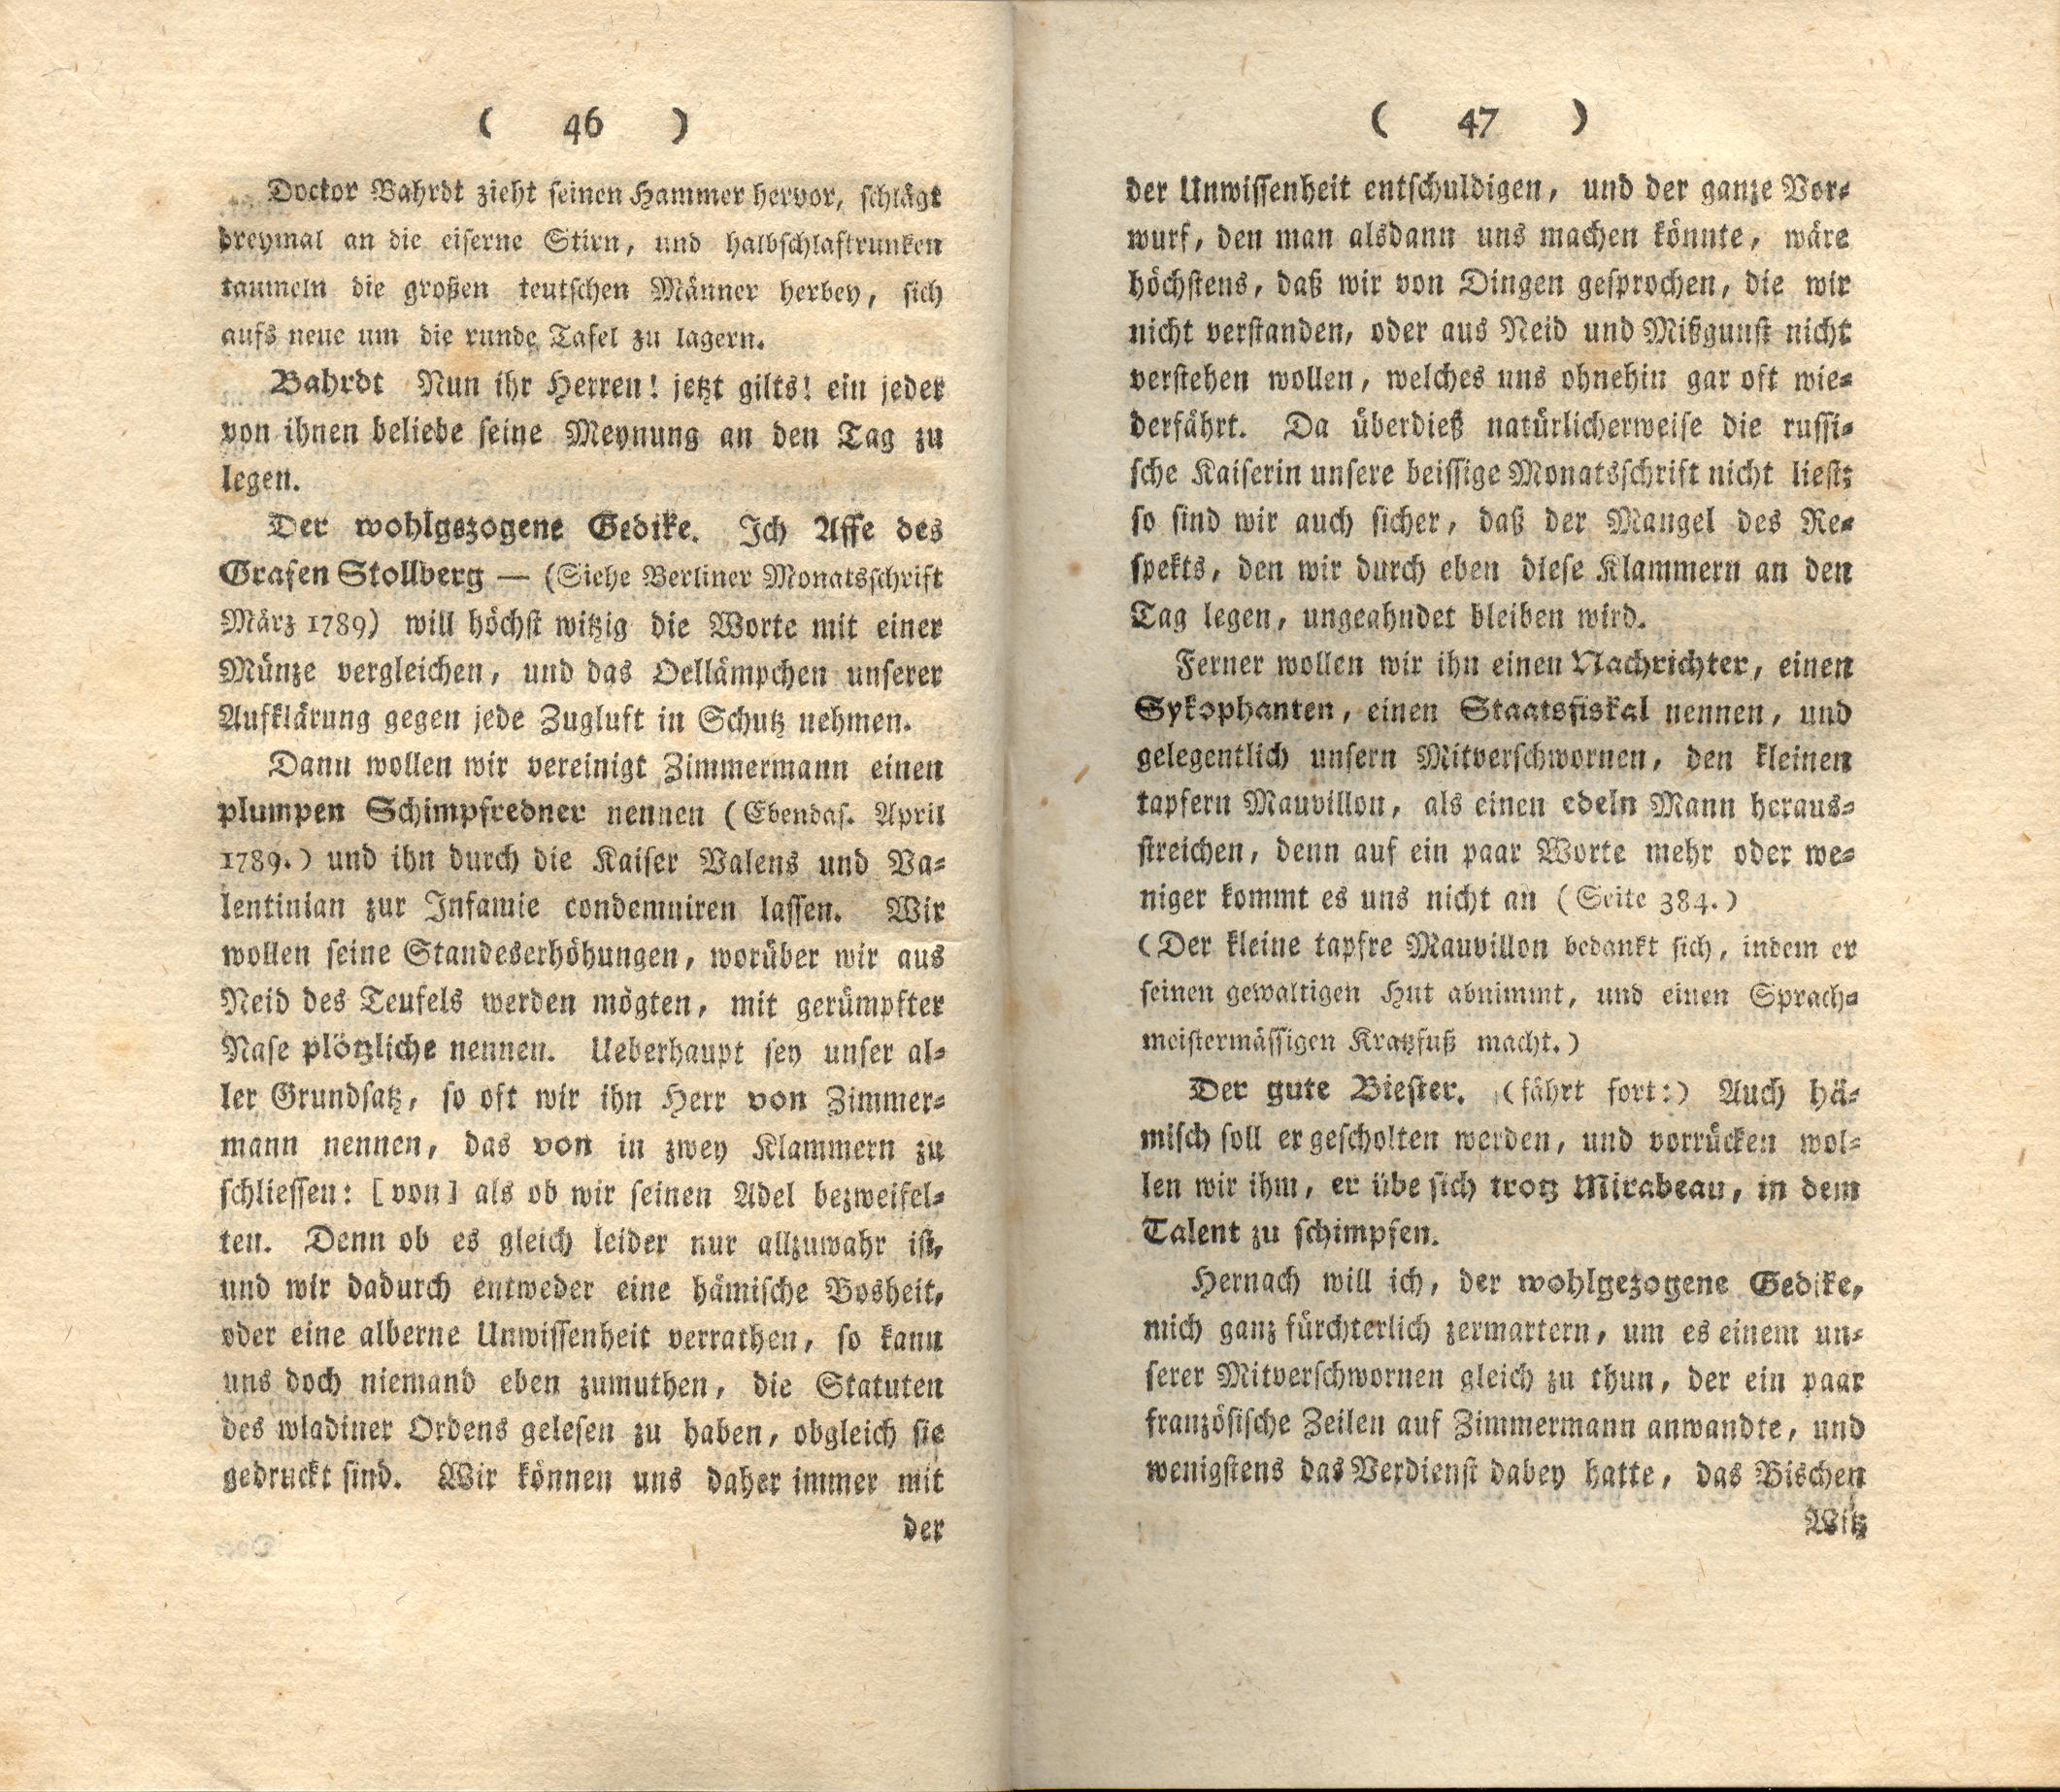 Doctor Bahrdt mit der eisernen Stirn (1790) | 25. (46-47) Põhitekst